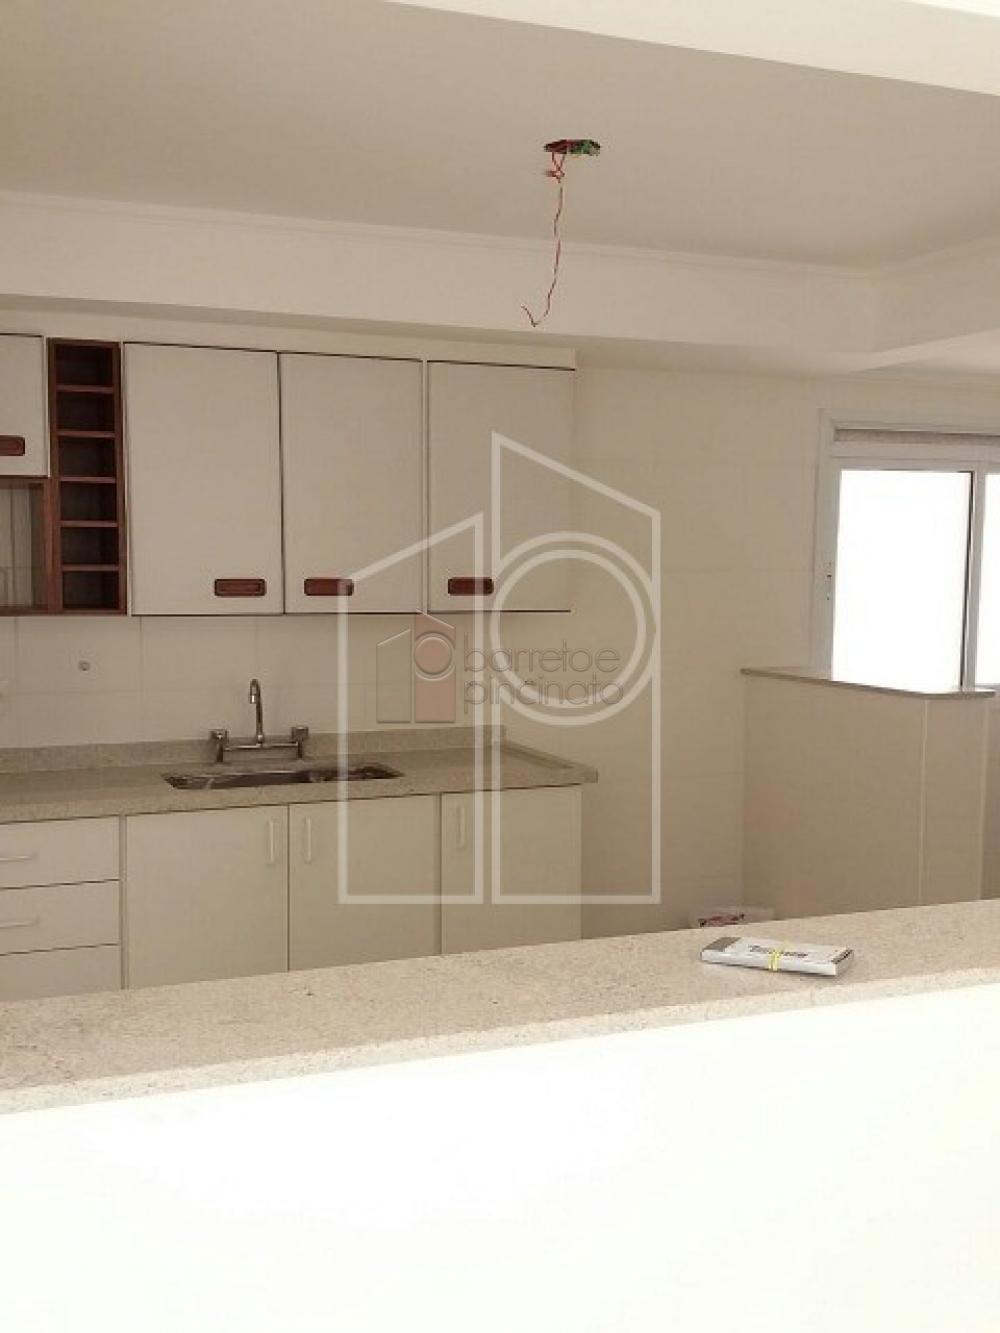 Alugar Apartamento / Padrão em Jundiaí R$ 2.600,00 - Foto 4